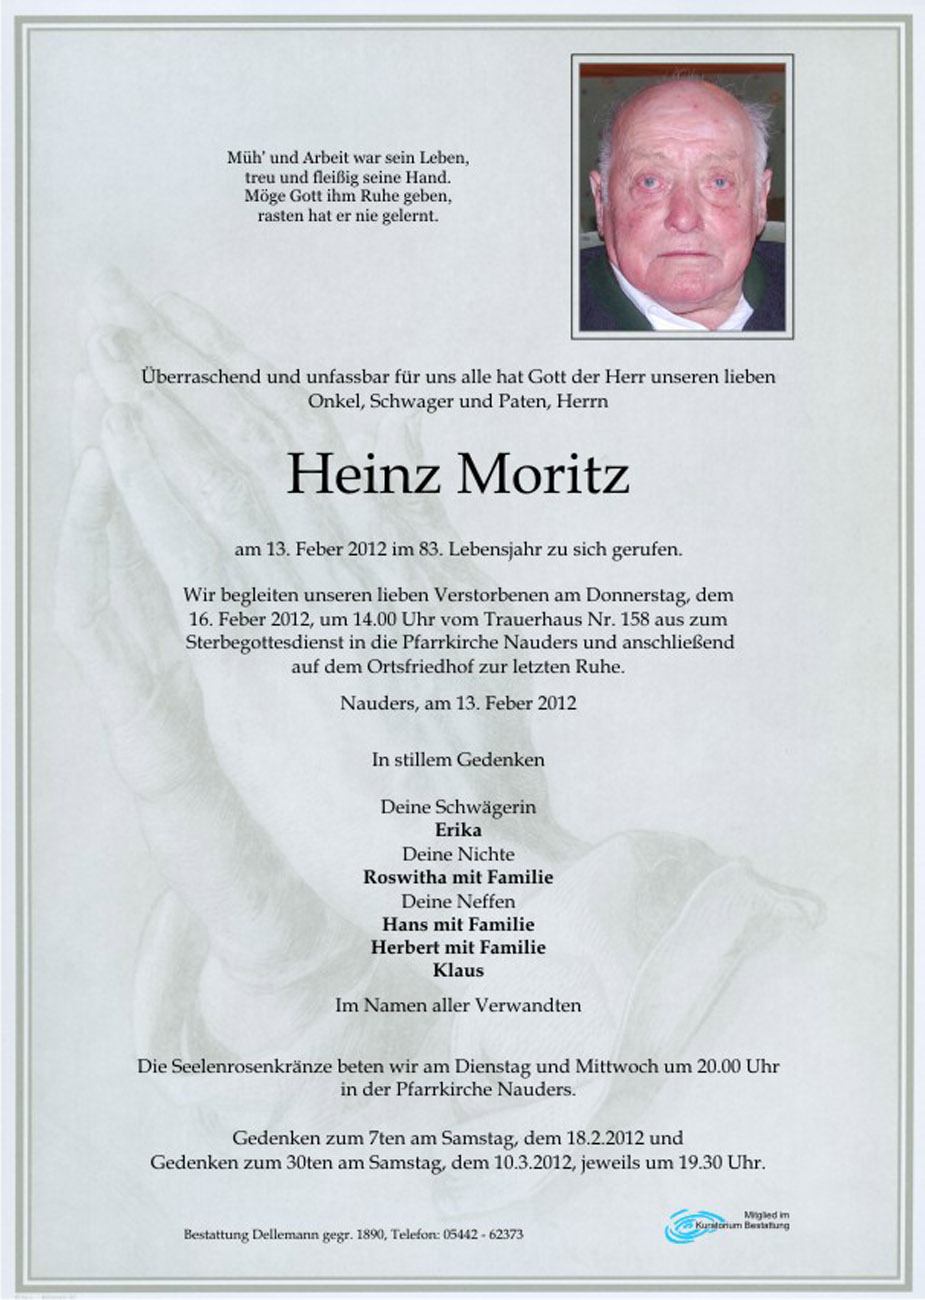   Heinz Moritz